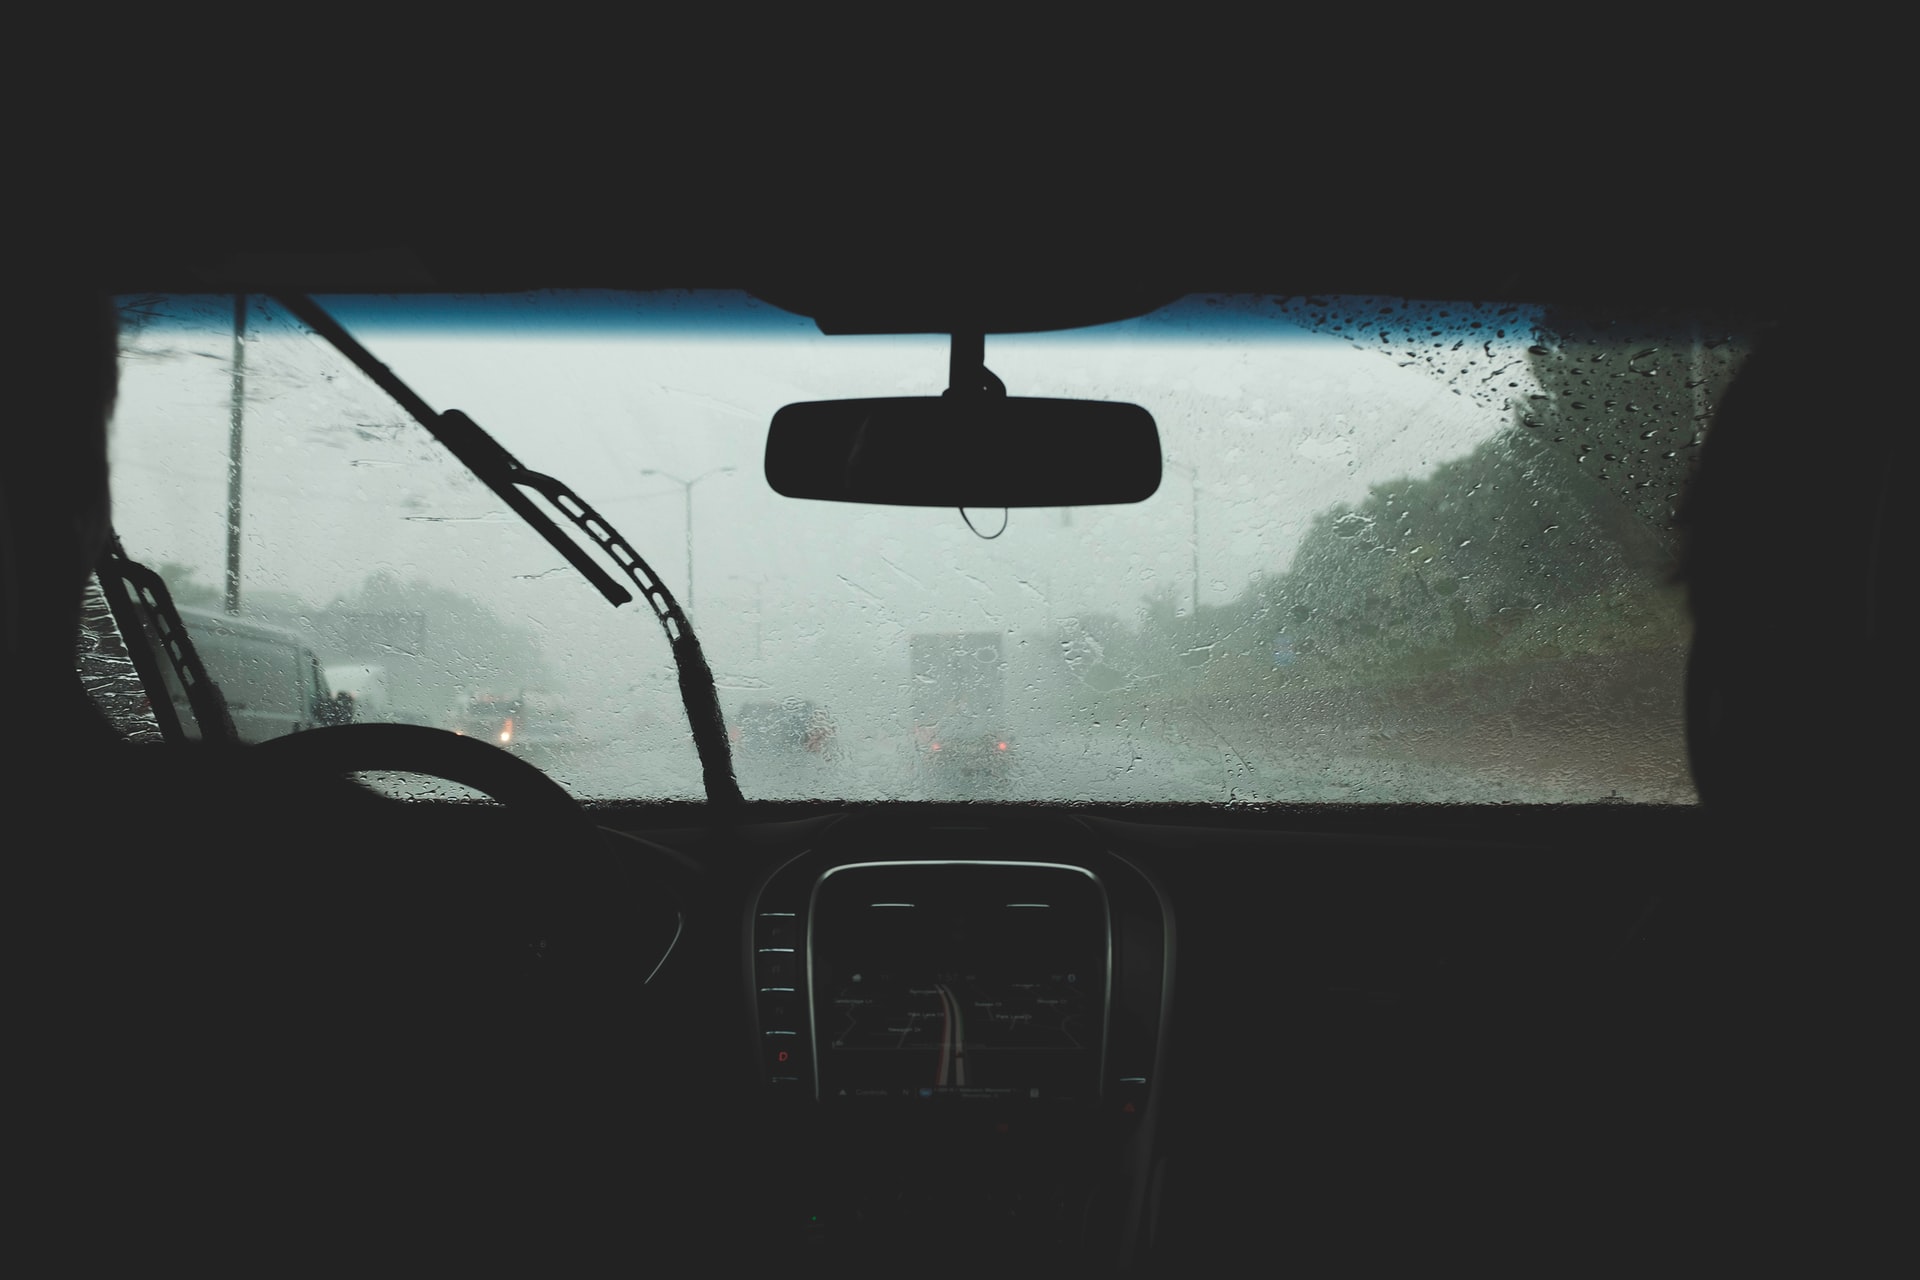 Aplica estos trucos para desempañar los vidrios del auto cuando llueve